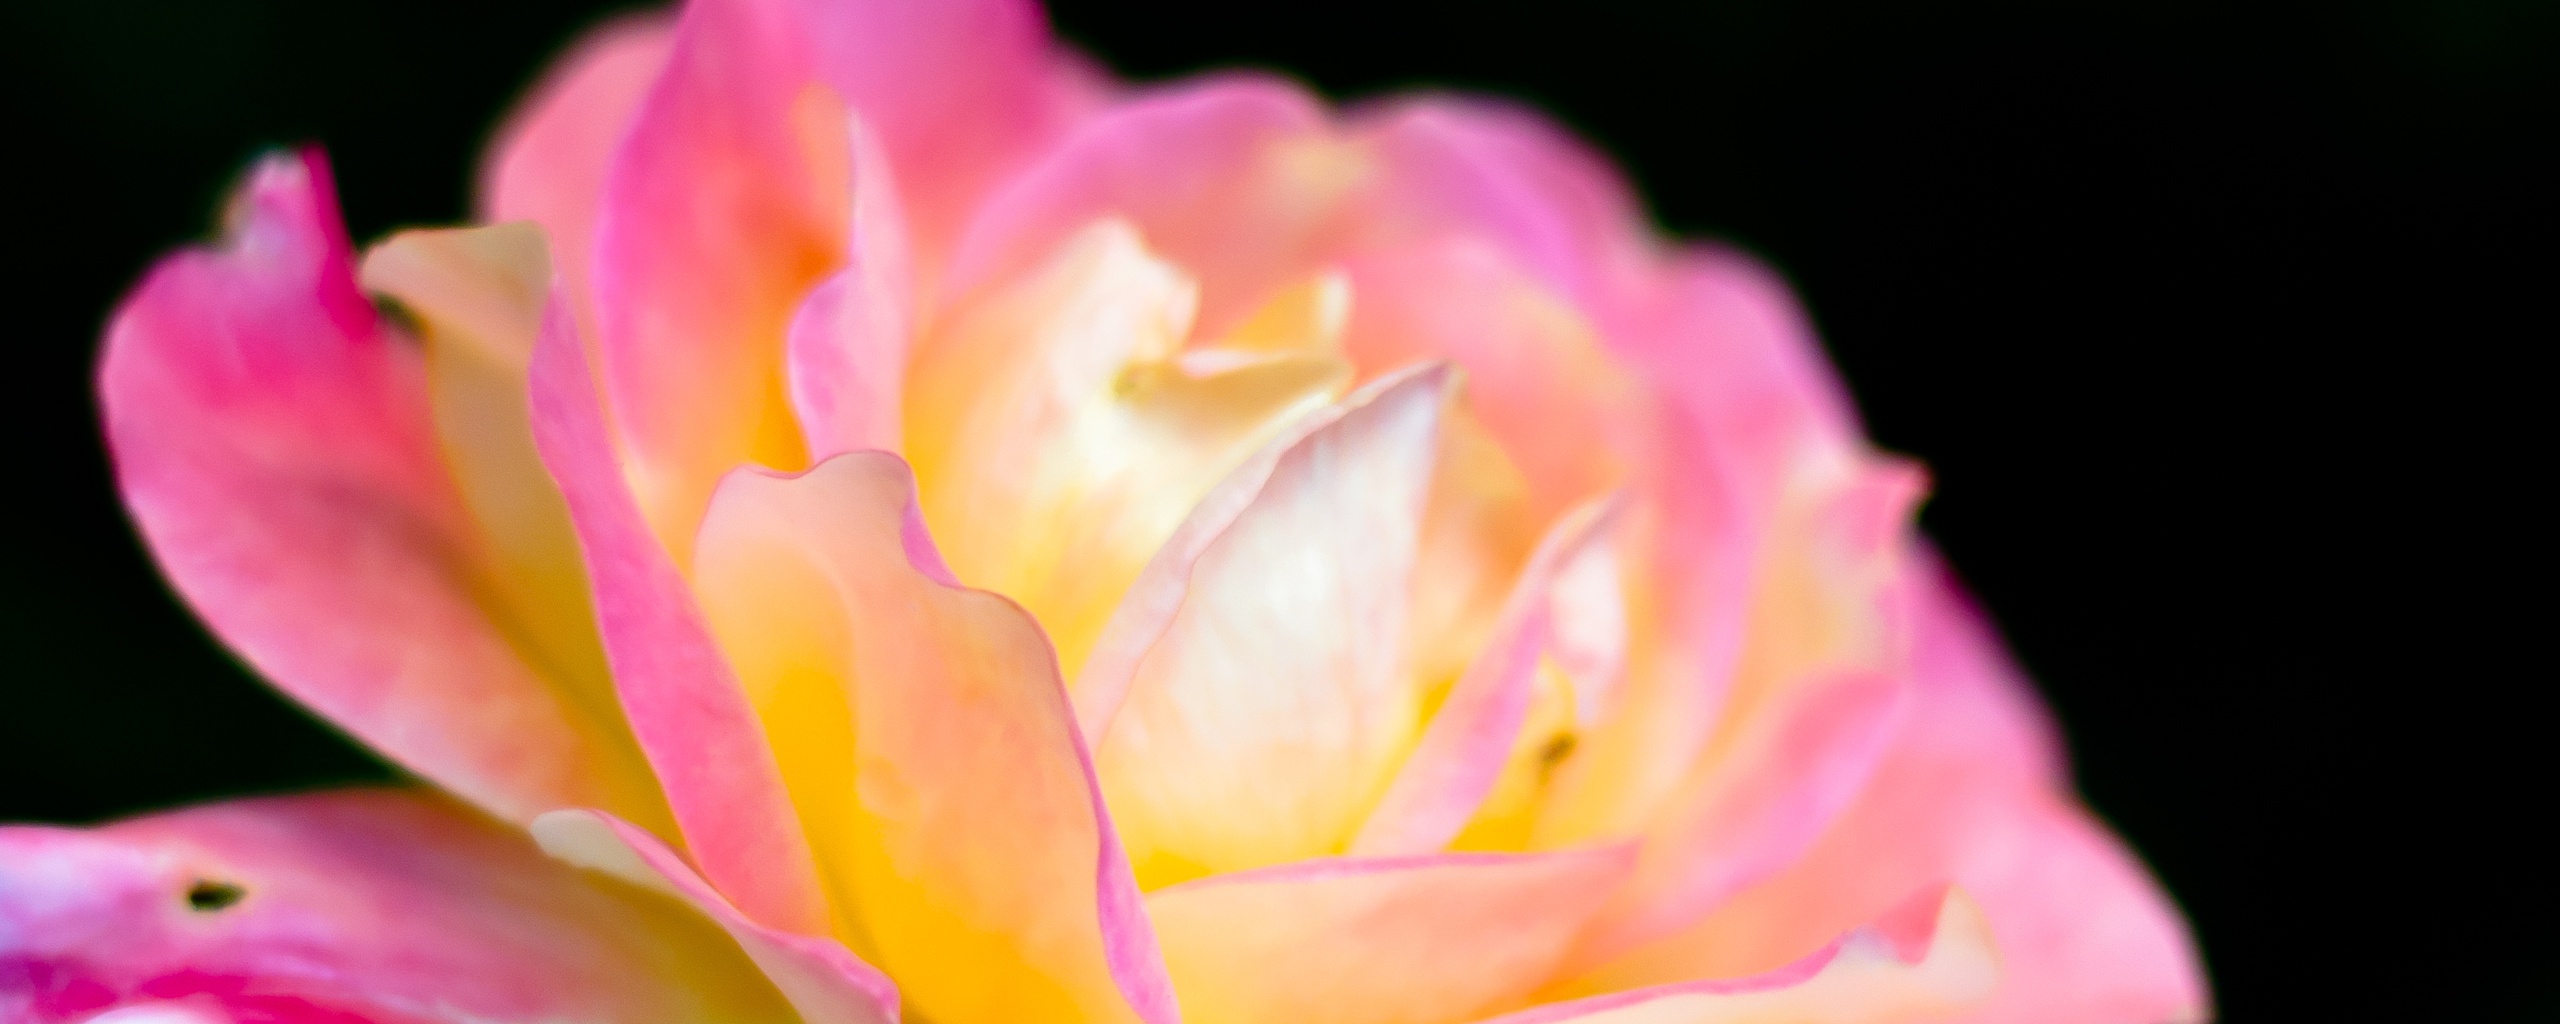 Картинка с нежным розовым цветком обои